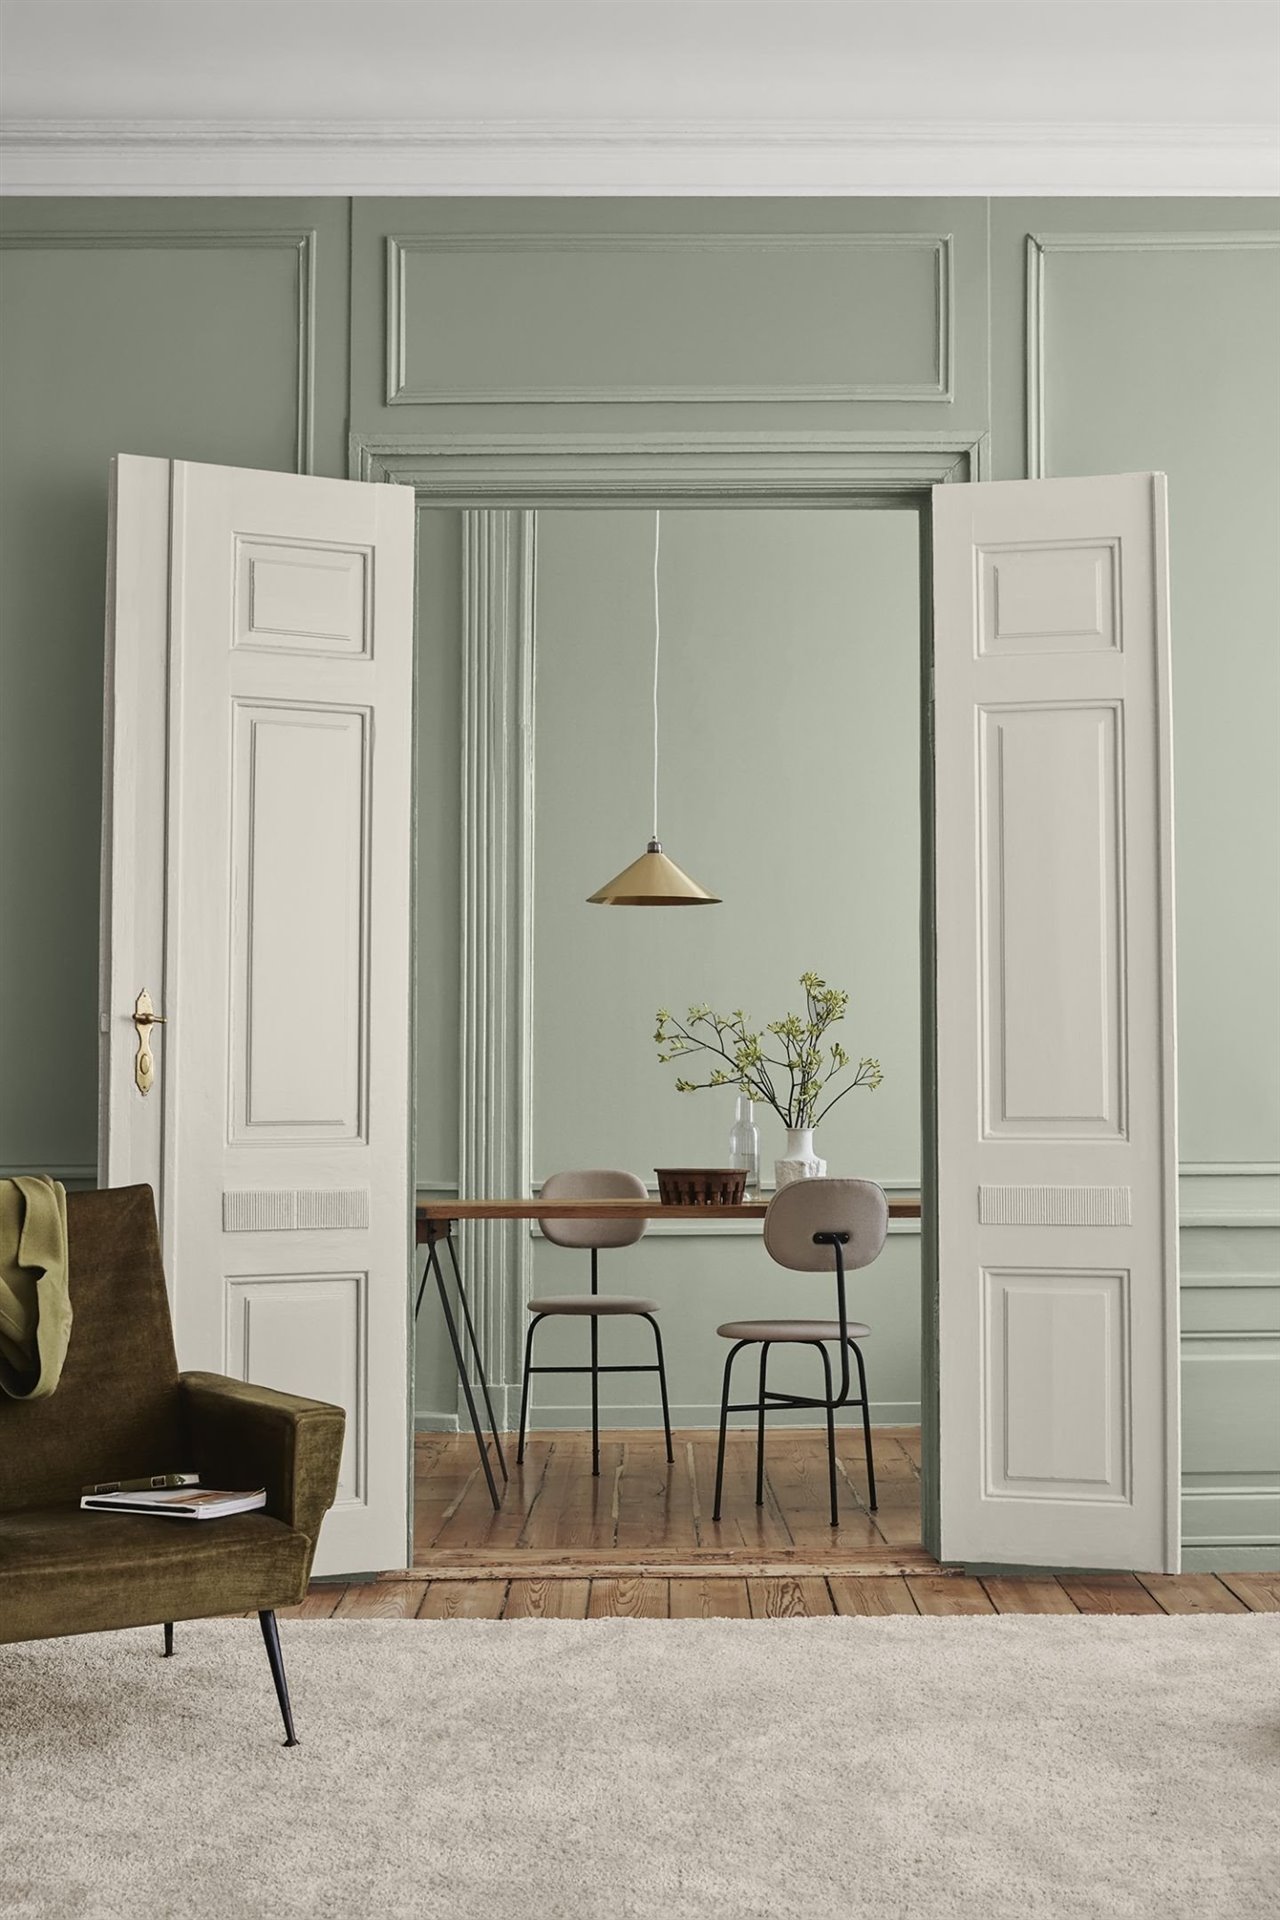 Salon con puertas pintadas a la tiza chalkpaint en color blanco